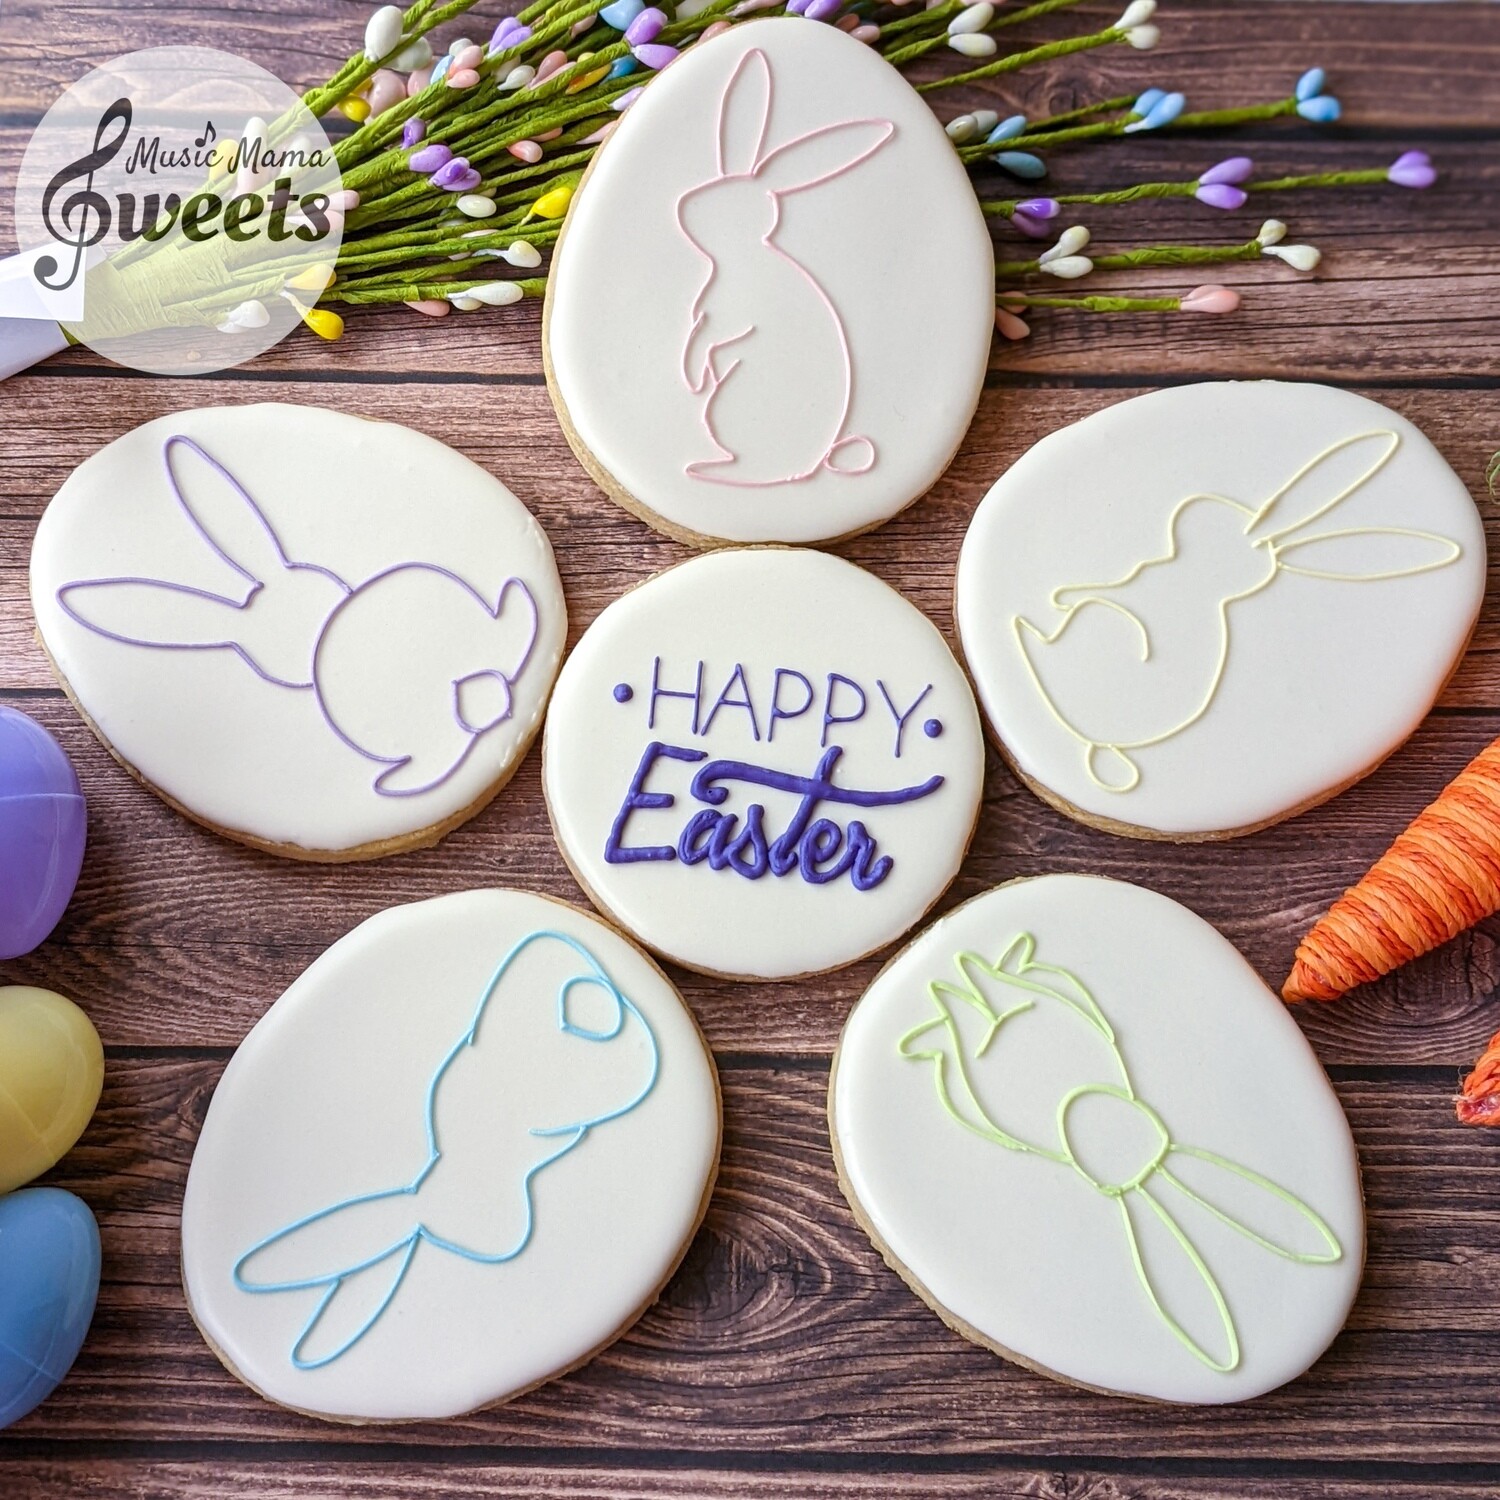 Happy Easter! XL Bunnies Platter